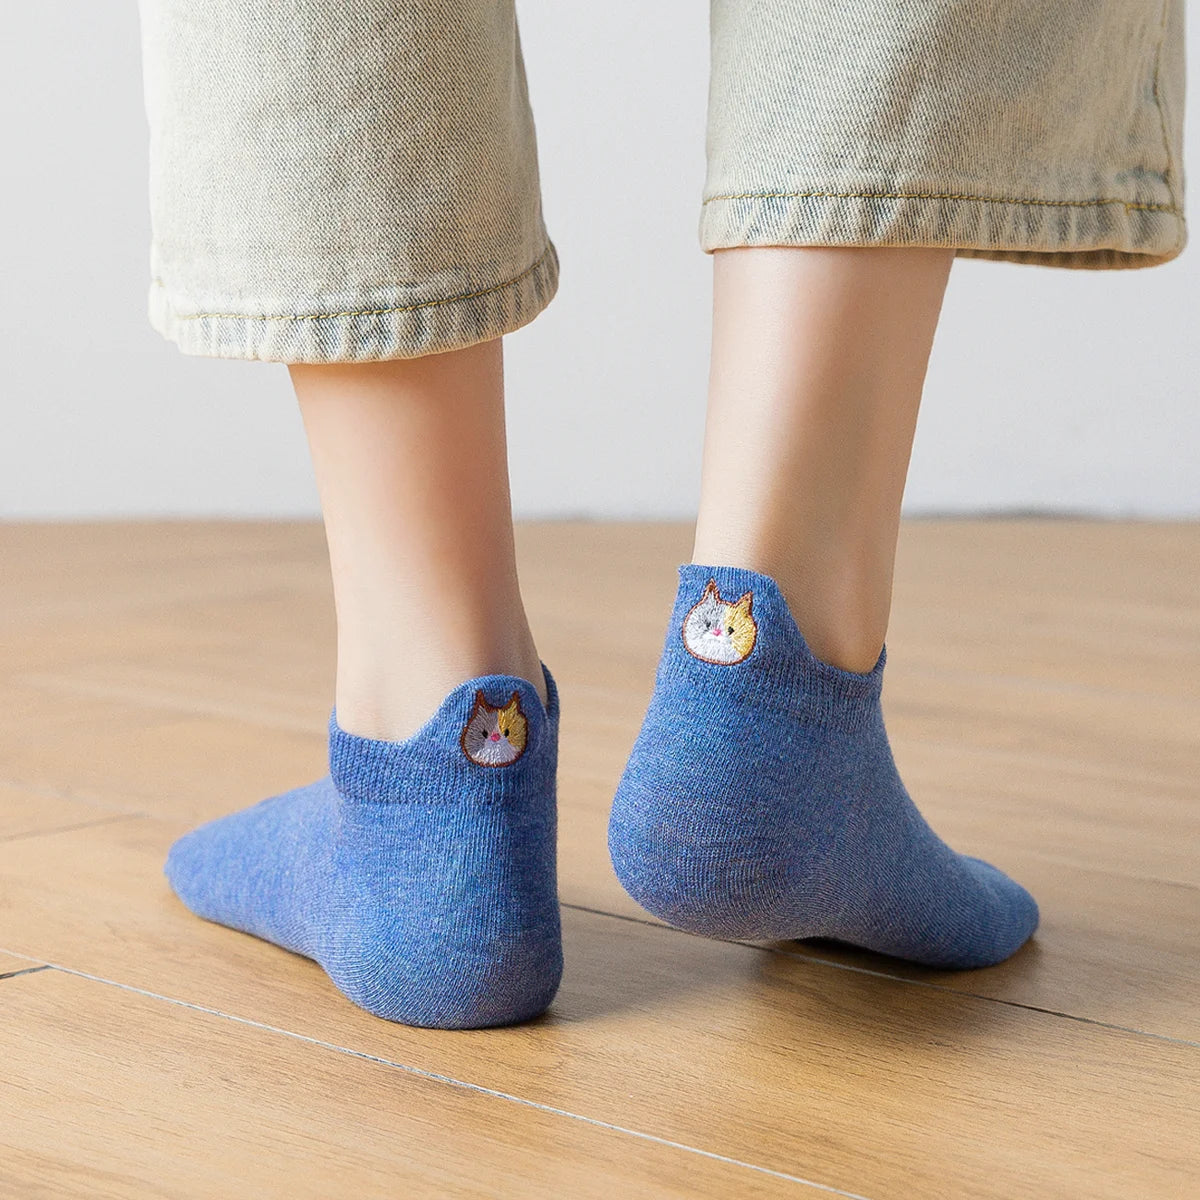 Chaussettes bleu en coton à languette chat pour femme | Chaussettes confortables et élégantes | Idéales pour le quotidien ou les occasions spéciales | Disponibles en plusieurs couleurs et tailles